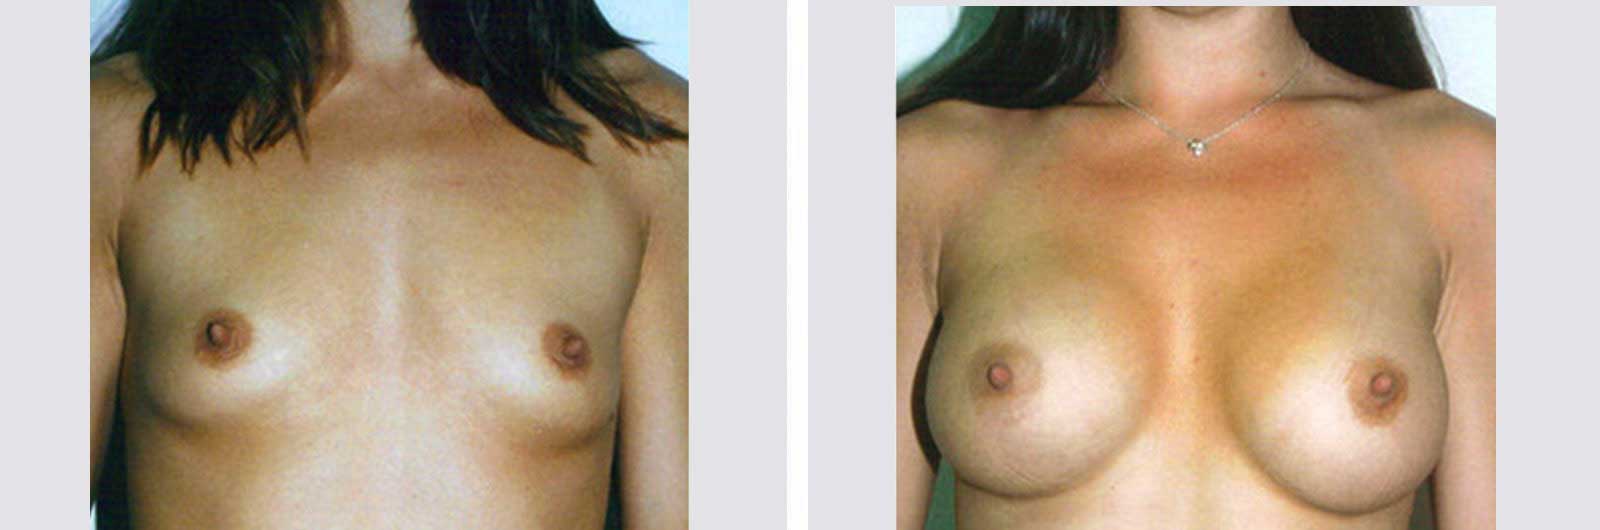 Cirugía de aumento de senos por Dr. Manlio Speziale